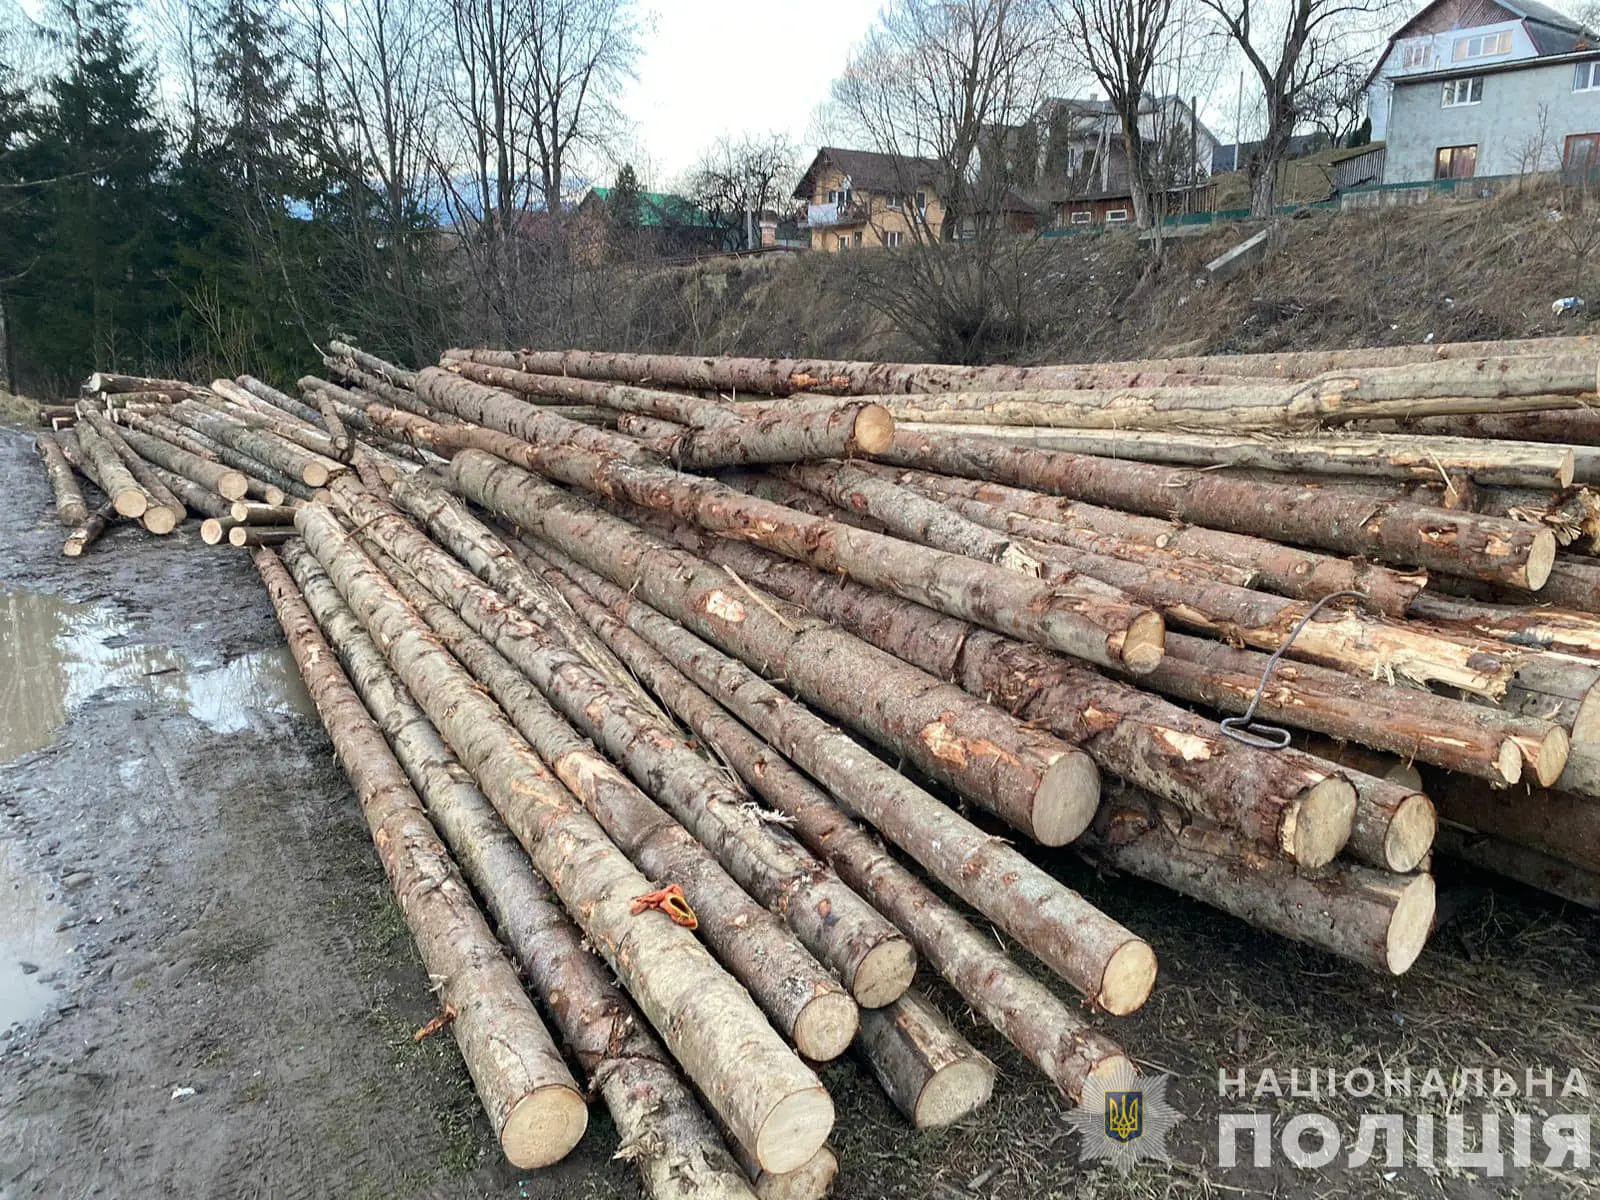  На Рахівщині поліція зафіксувала злочин проти довкілля: вилучено понад 40 кубометрів нелегальної деревини 1